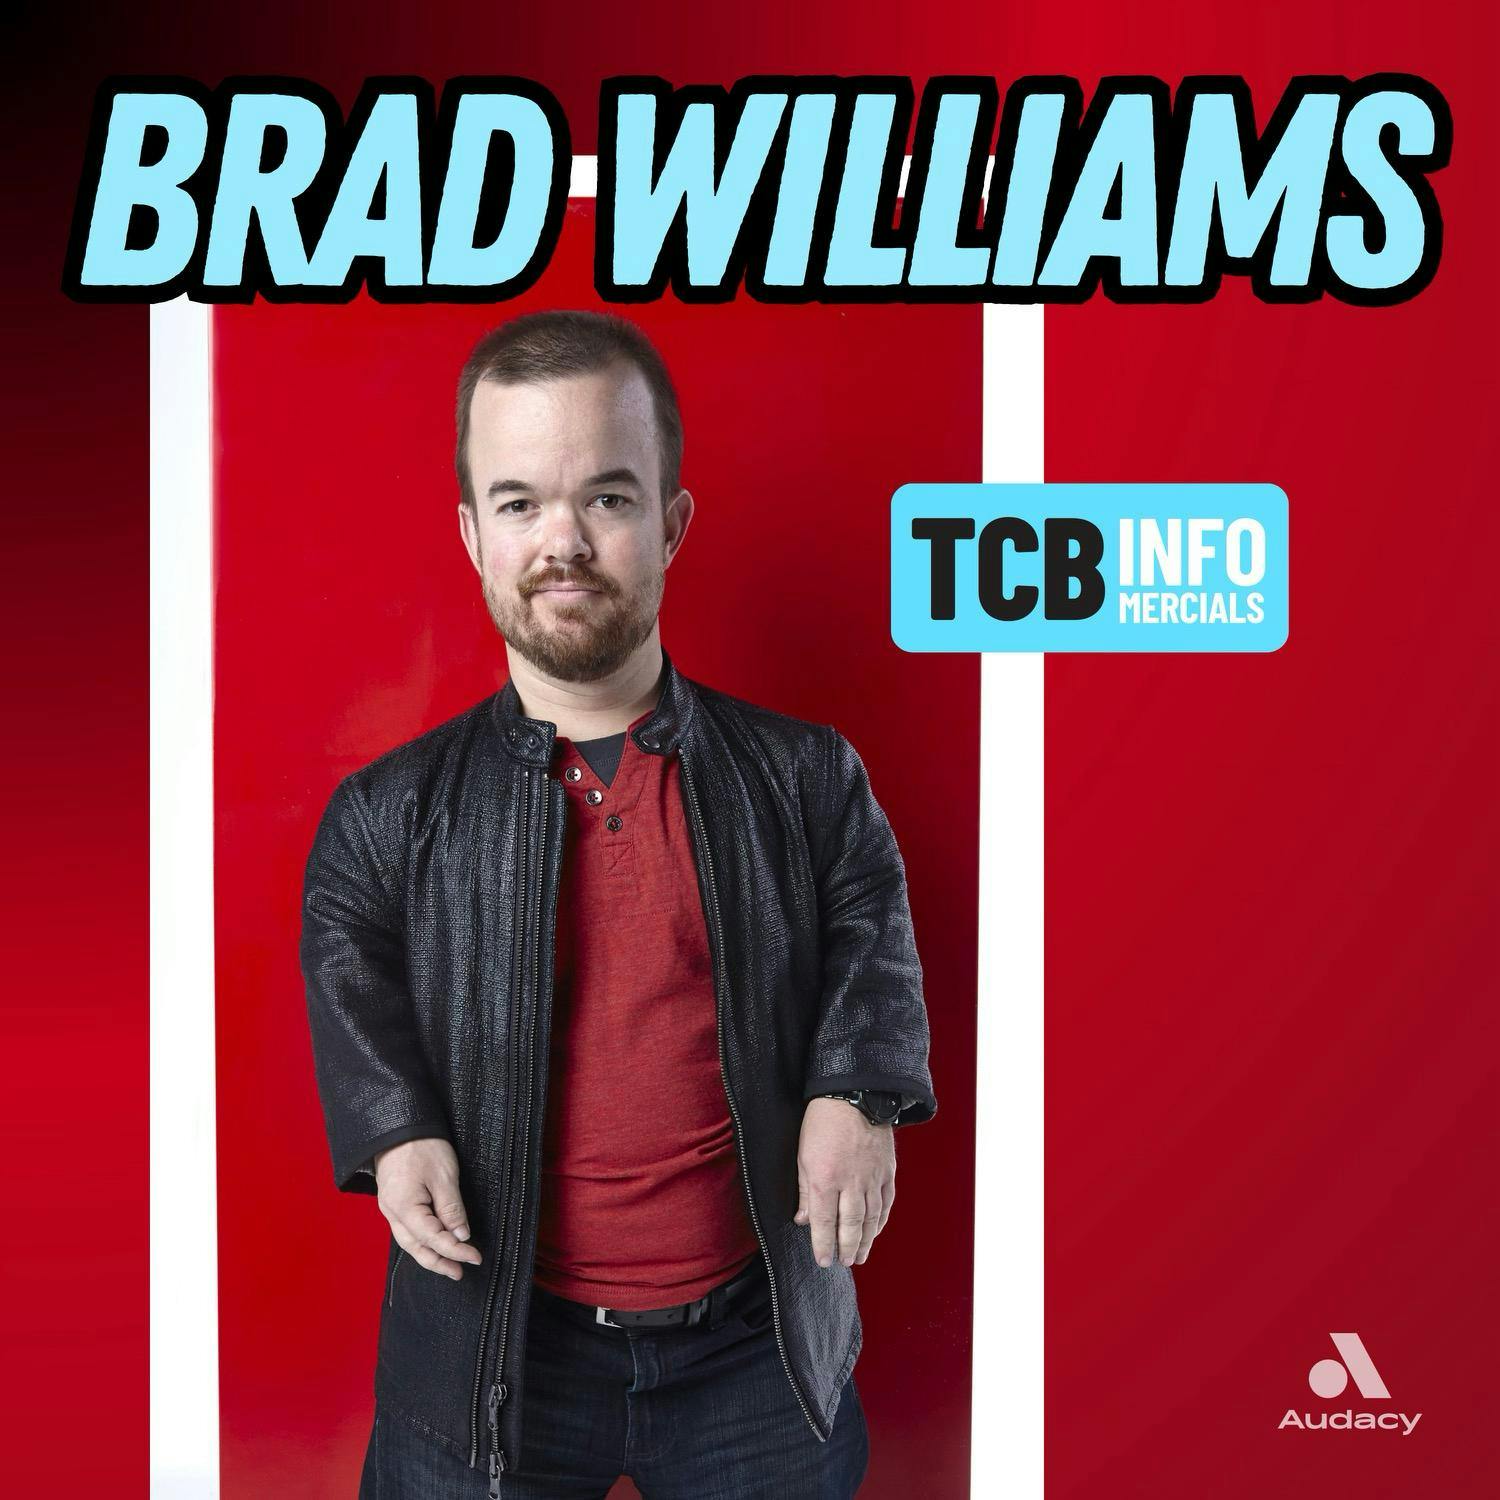 TCB Infomercial w. Brad Williams